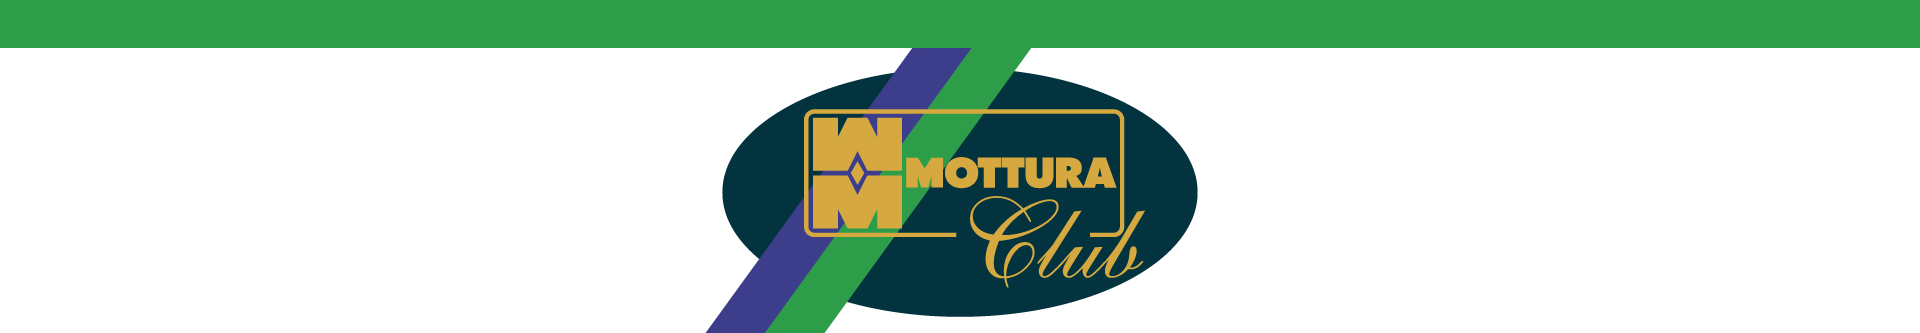 mottura club